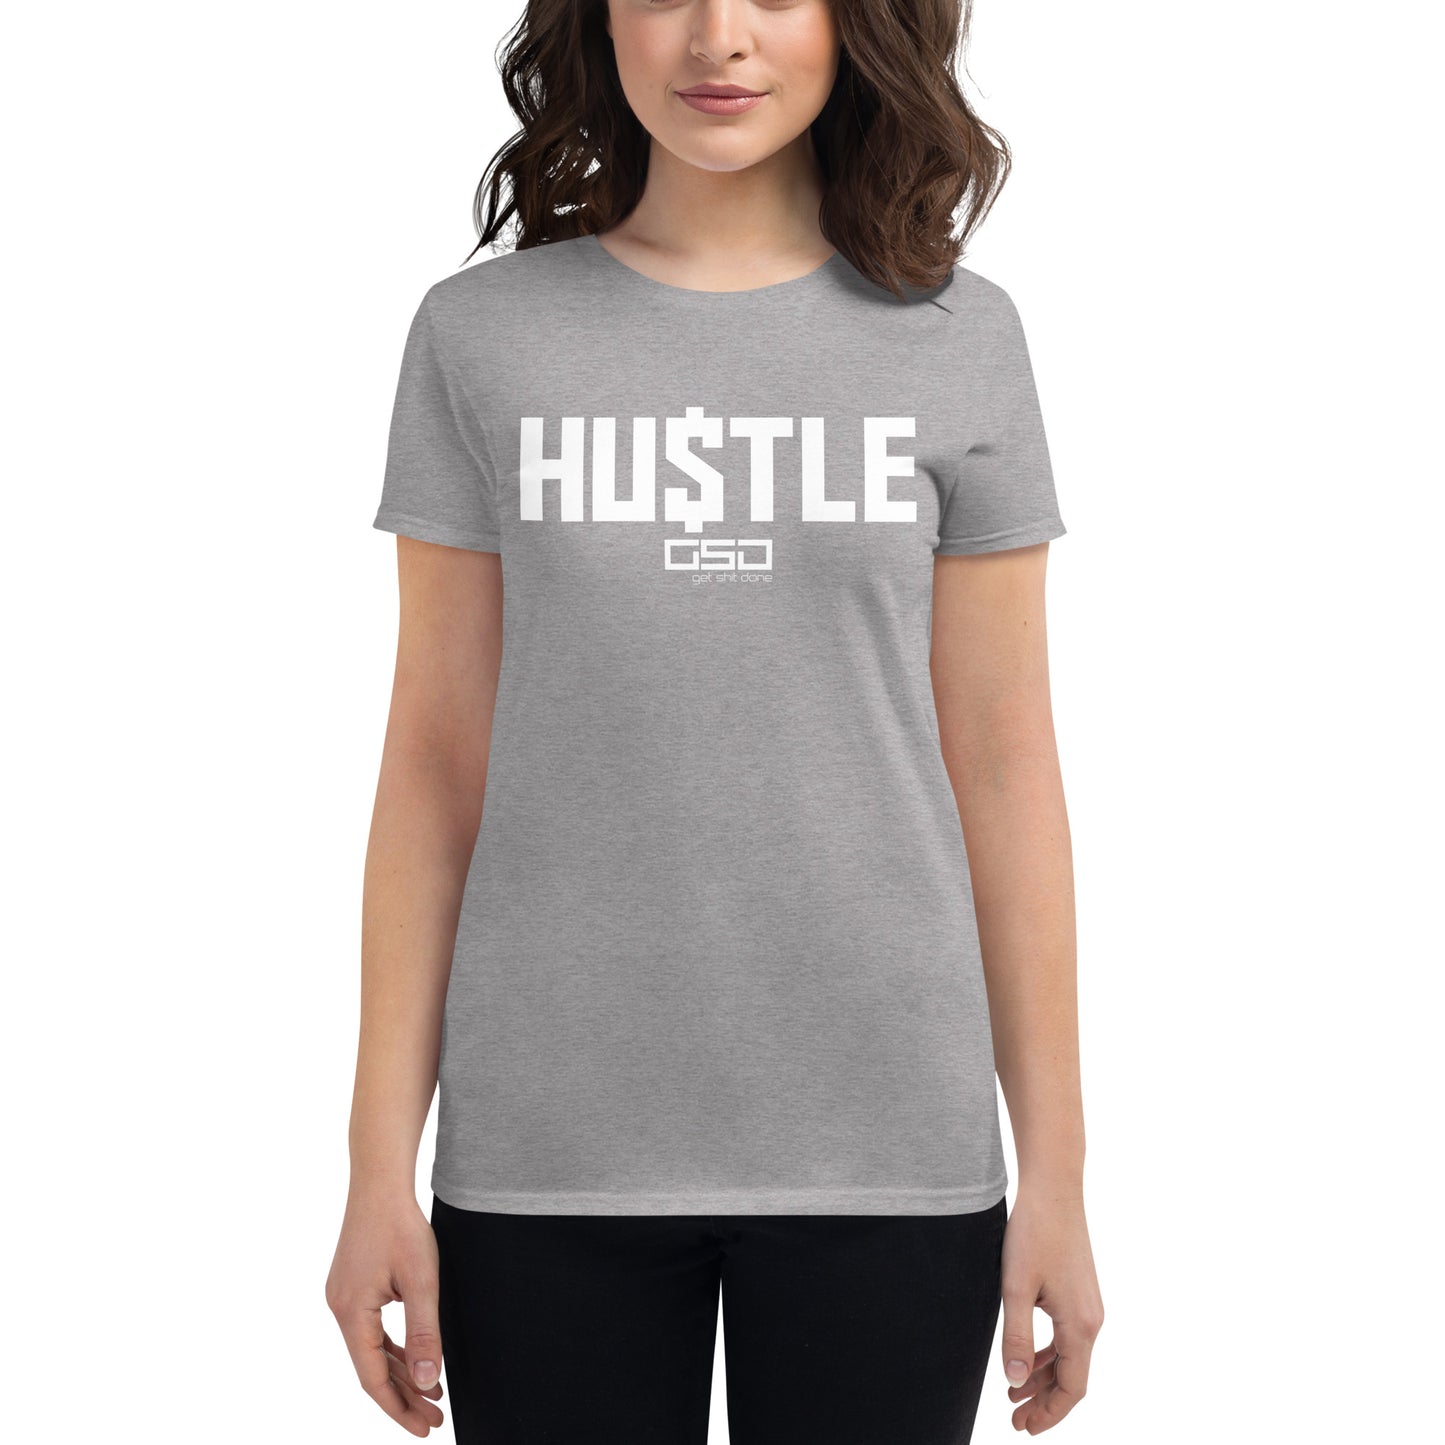 HU$TLE-Women's short sleeve t-shirt